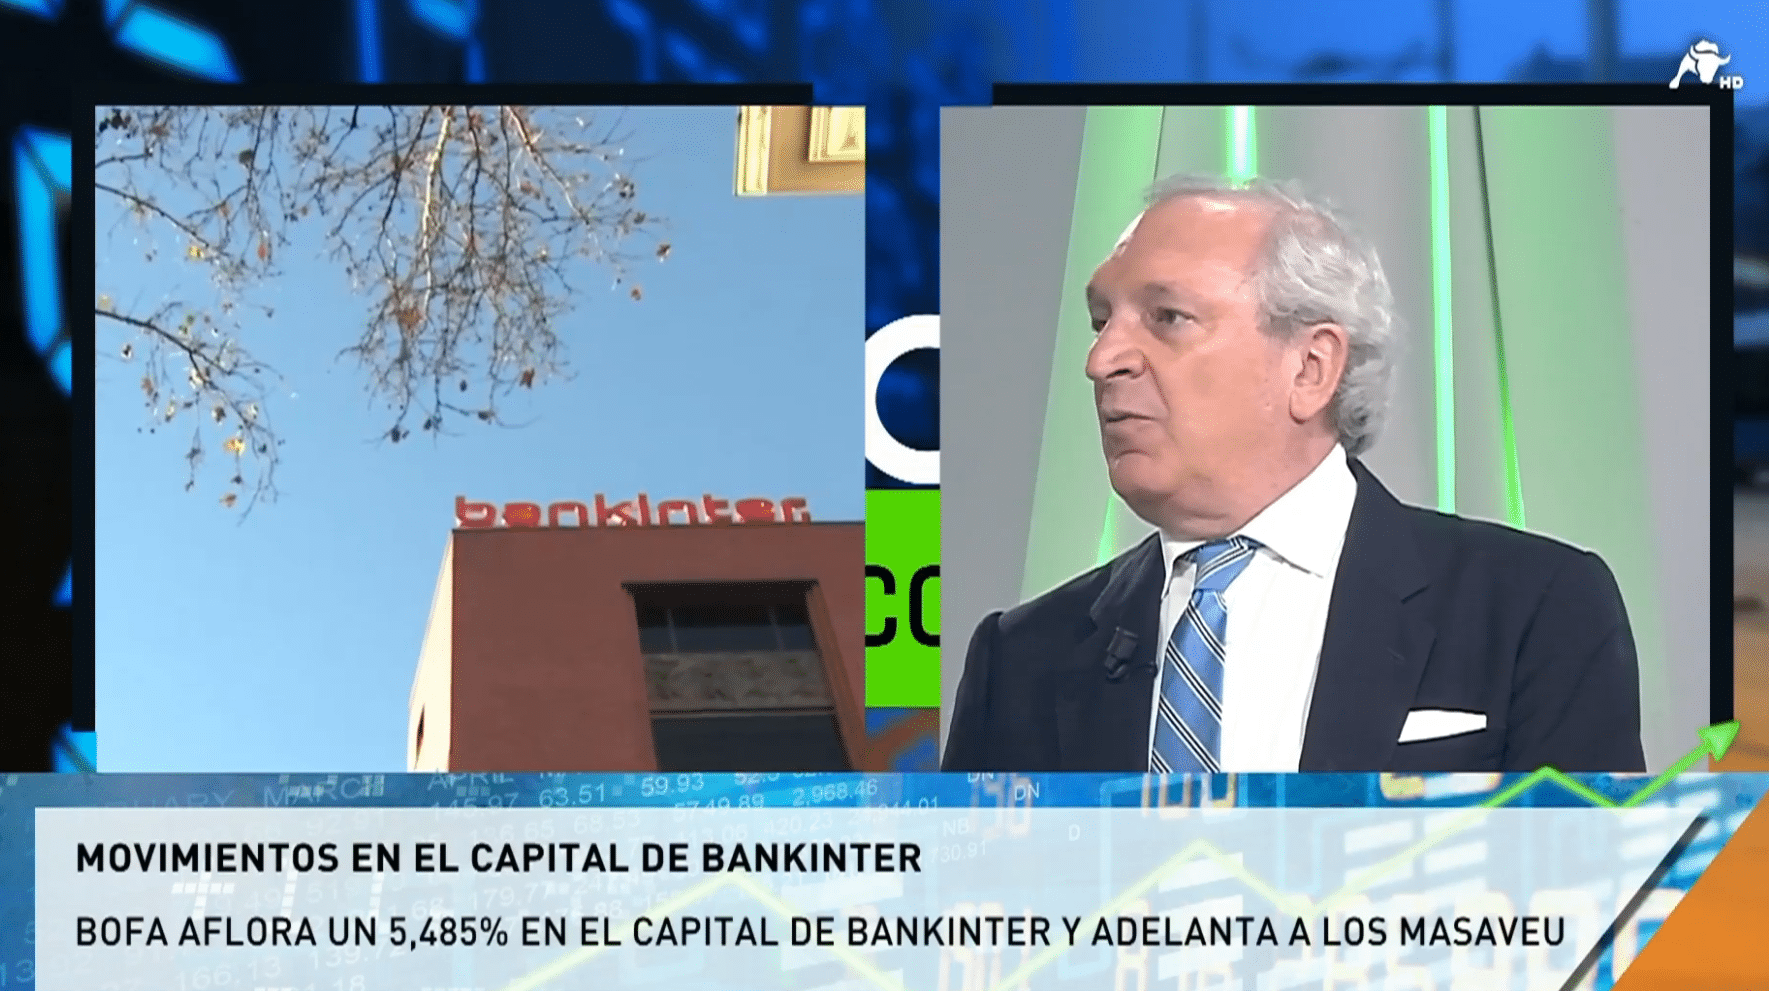  Antonio Banda sobre el 5% del BofA: “Ni interés estratégico ni preocupante”